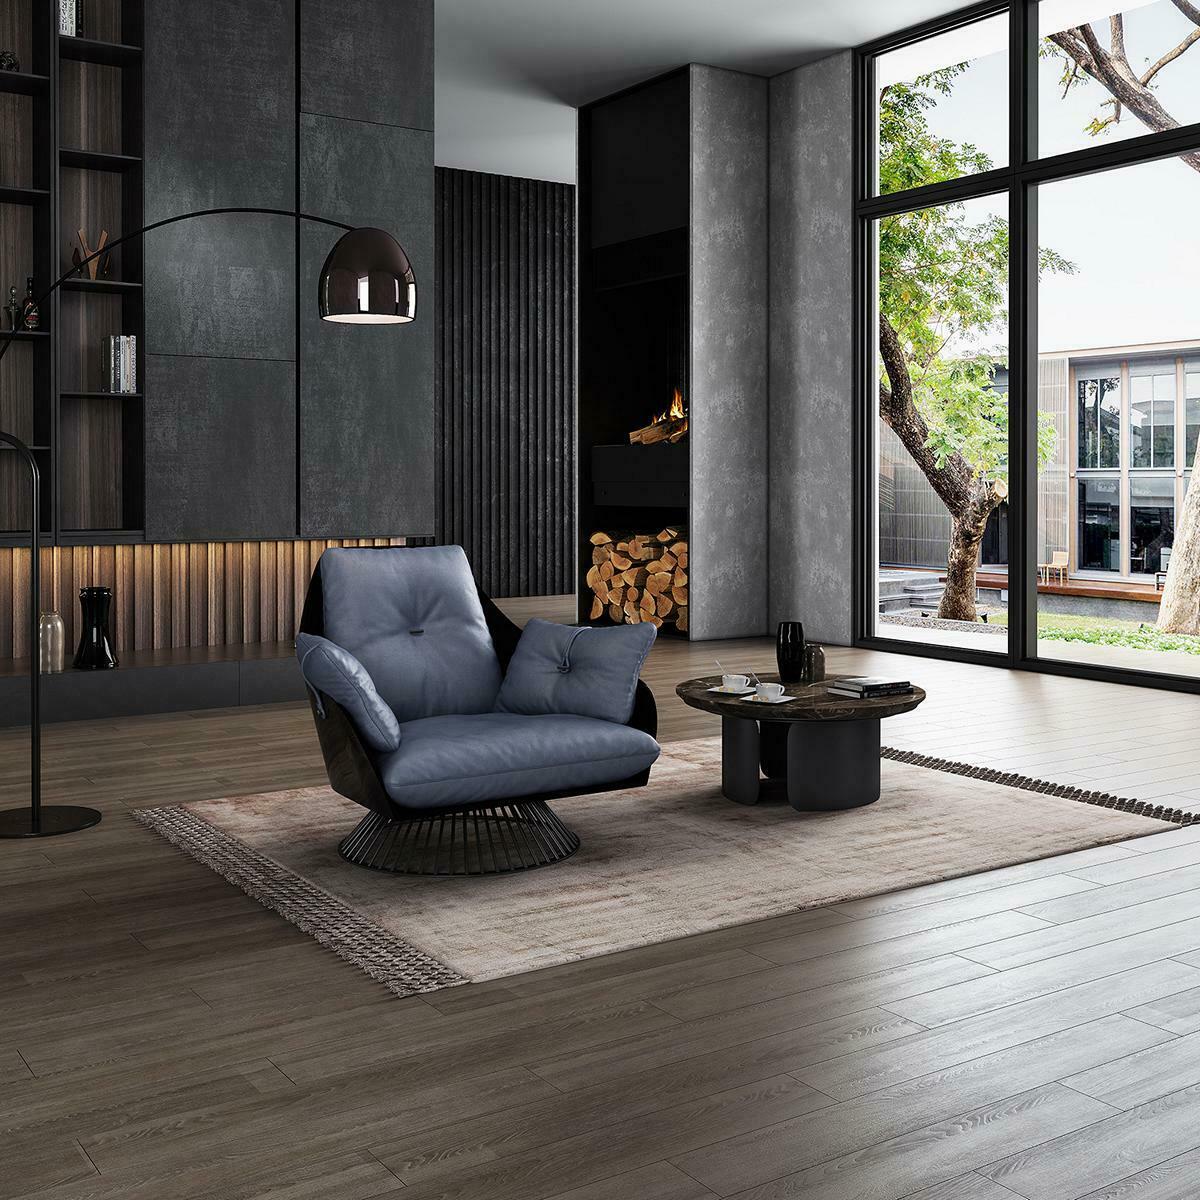 Luxus Sessel Möbel Wohnzimmer Einsitzer Sofa Couch Lounge Deko Club Hotel